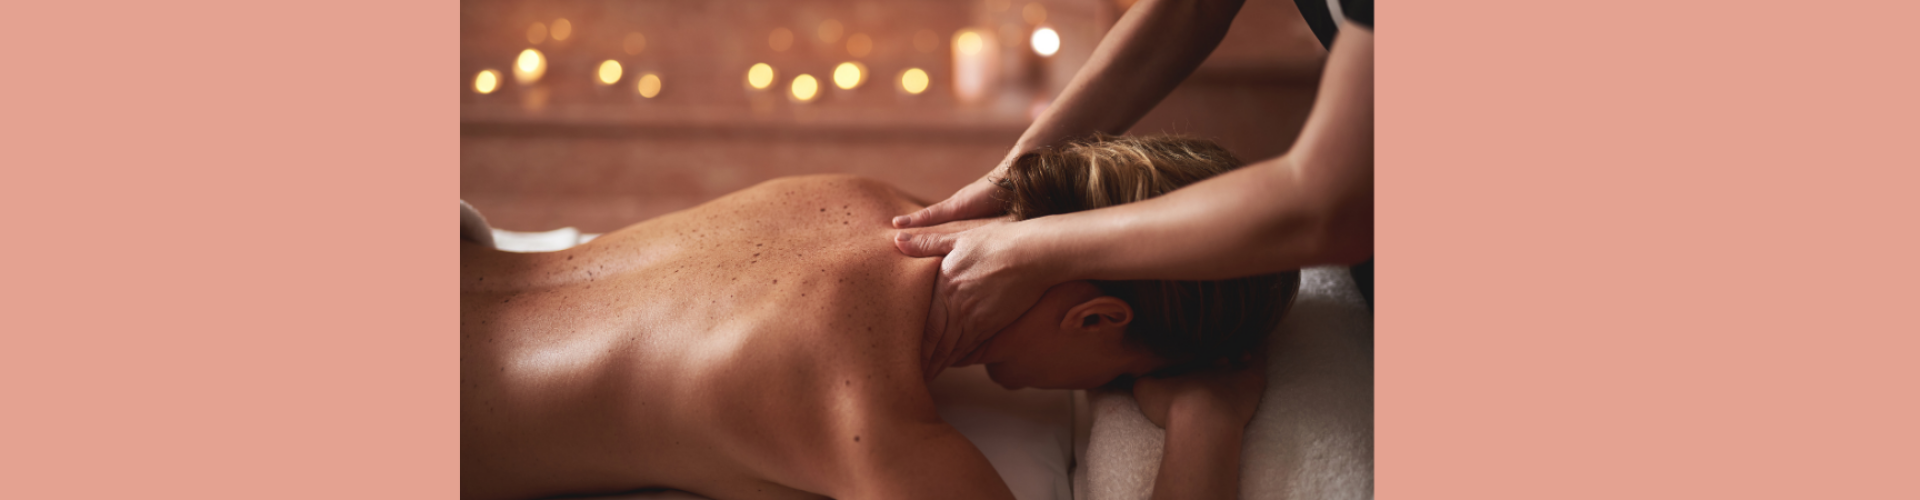 massage enschede nekpijn vrouwen